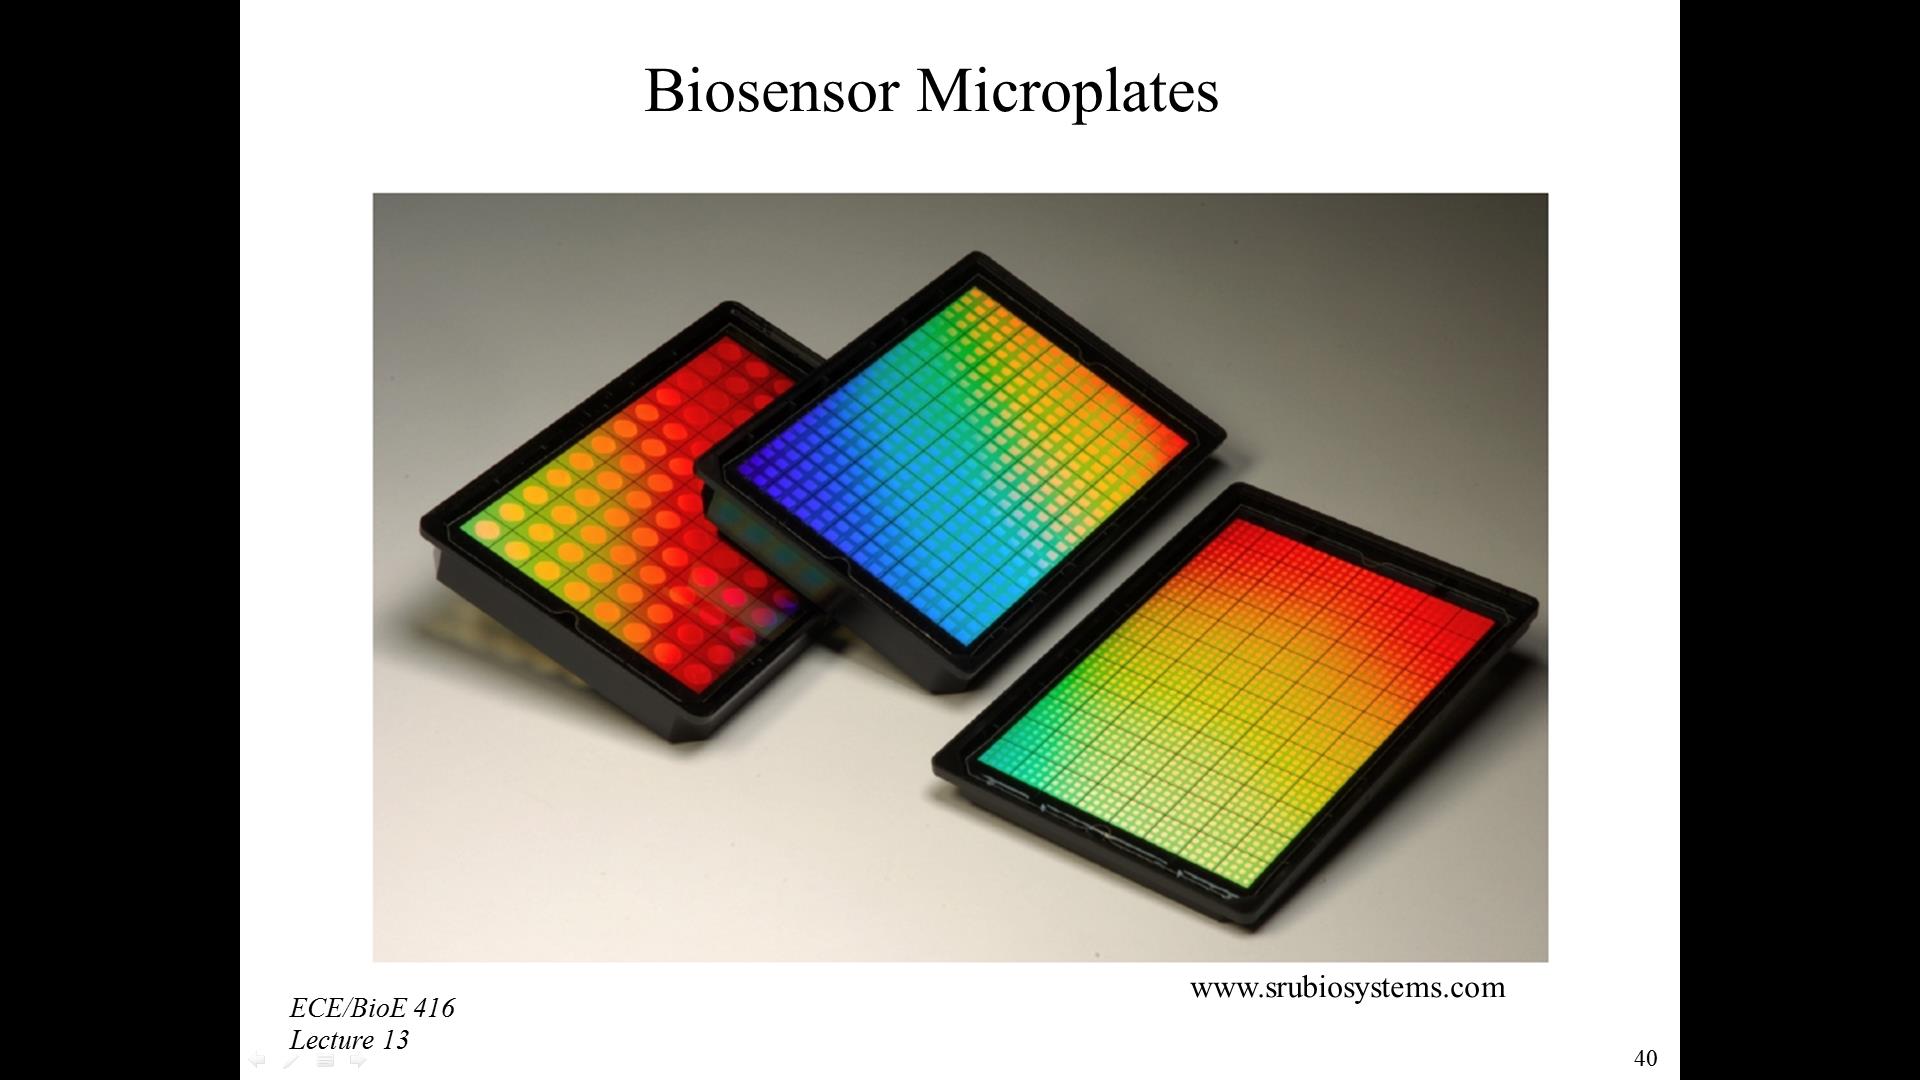 Biosensor Microplates